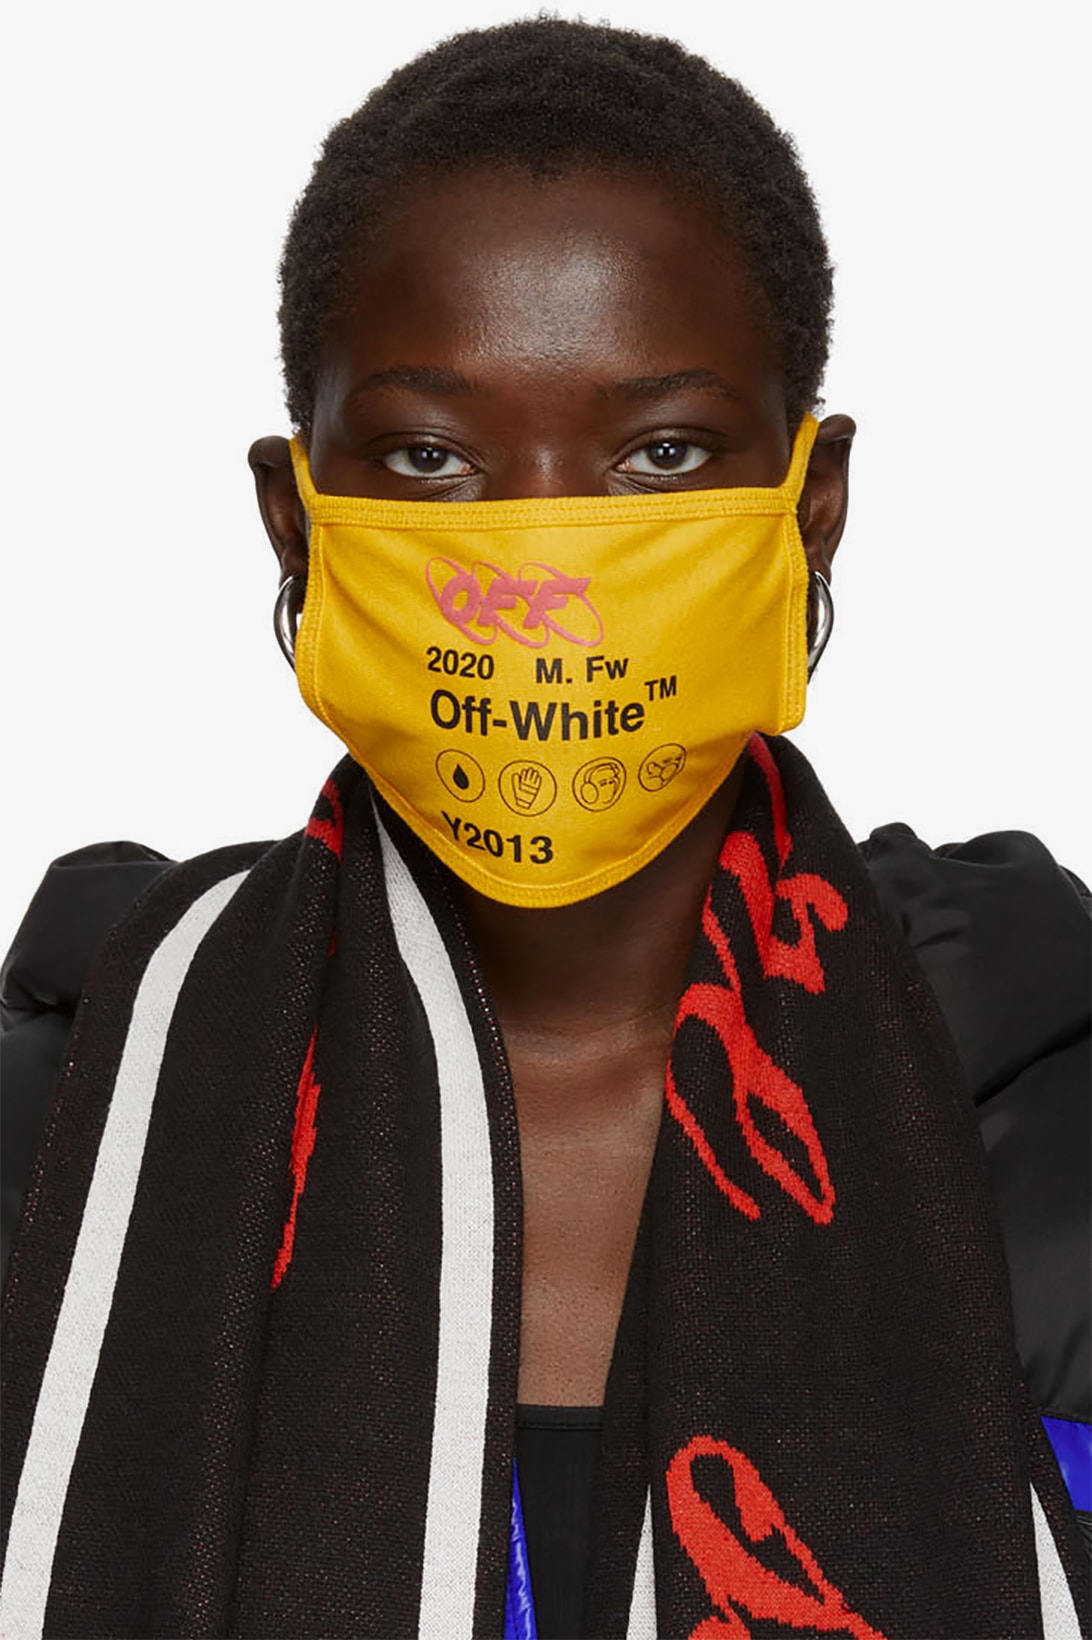 off white yellow industrial y013 logo mask fashion streetwear 